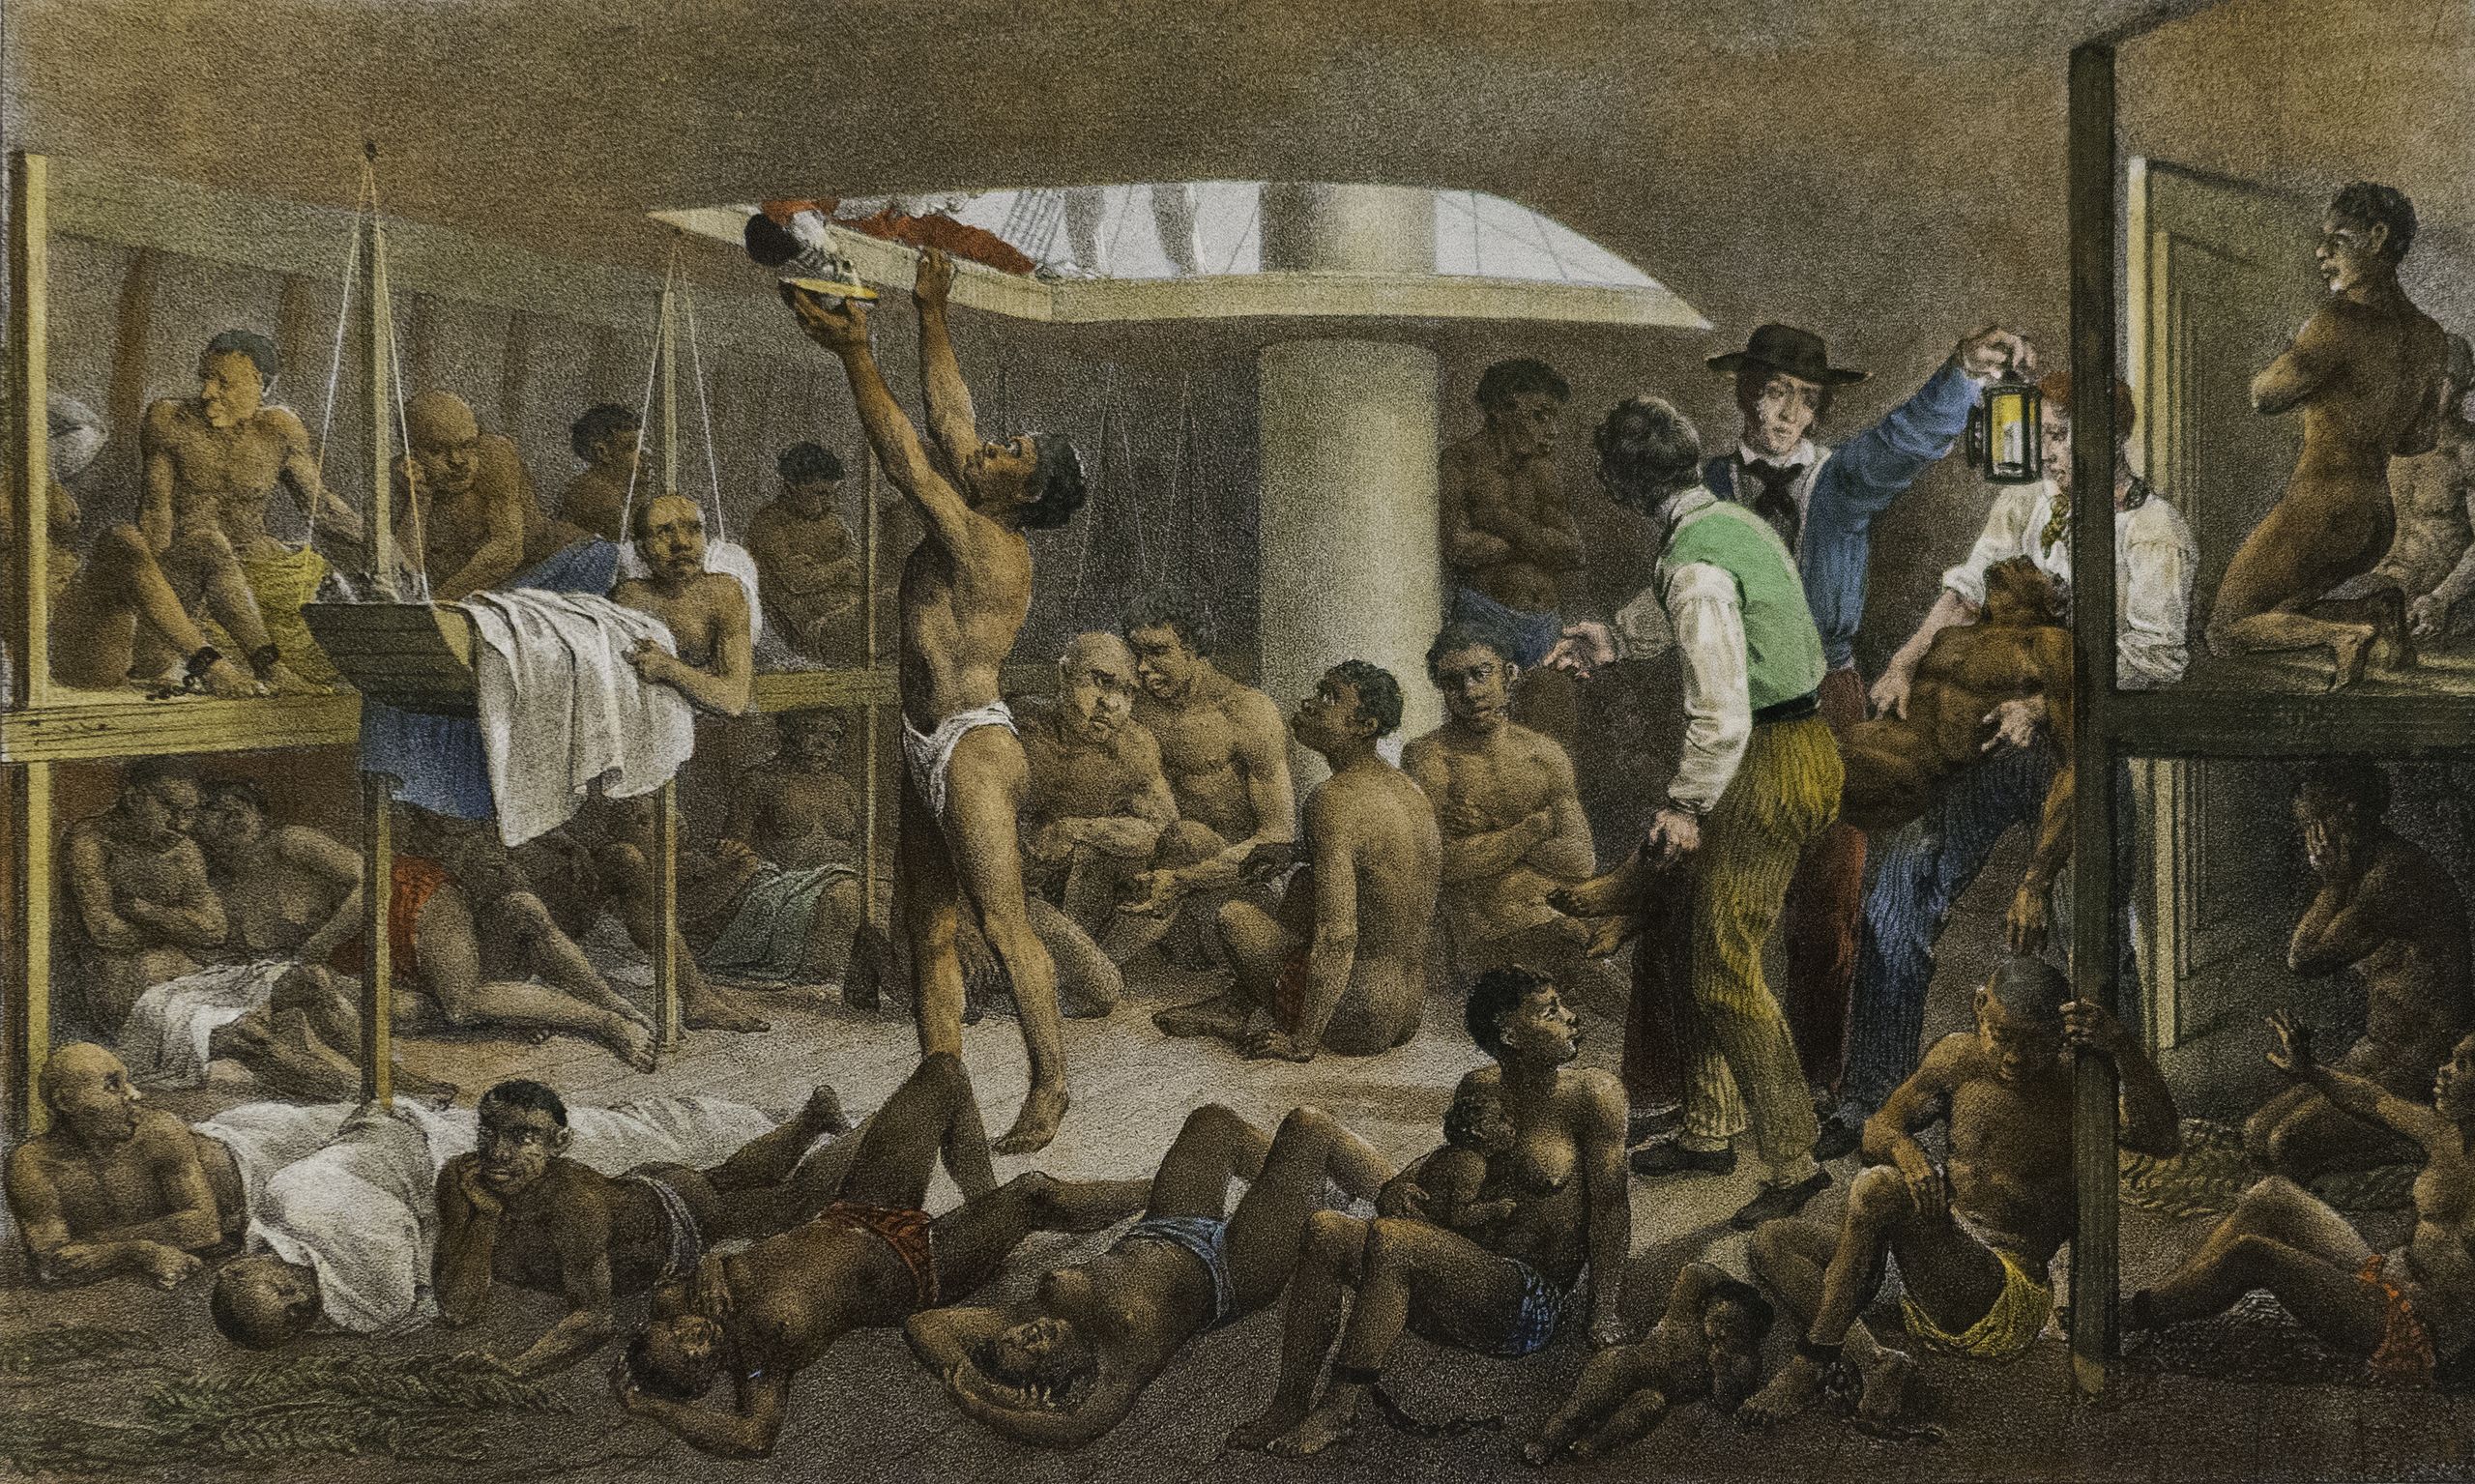 Navio negreiro, de Johann Moritz Rugendas. 1830. Narra um episódio da história em que os negros eram trazidos em navios negreiros.